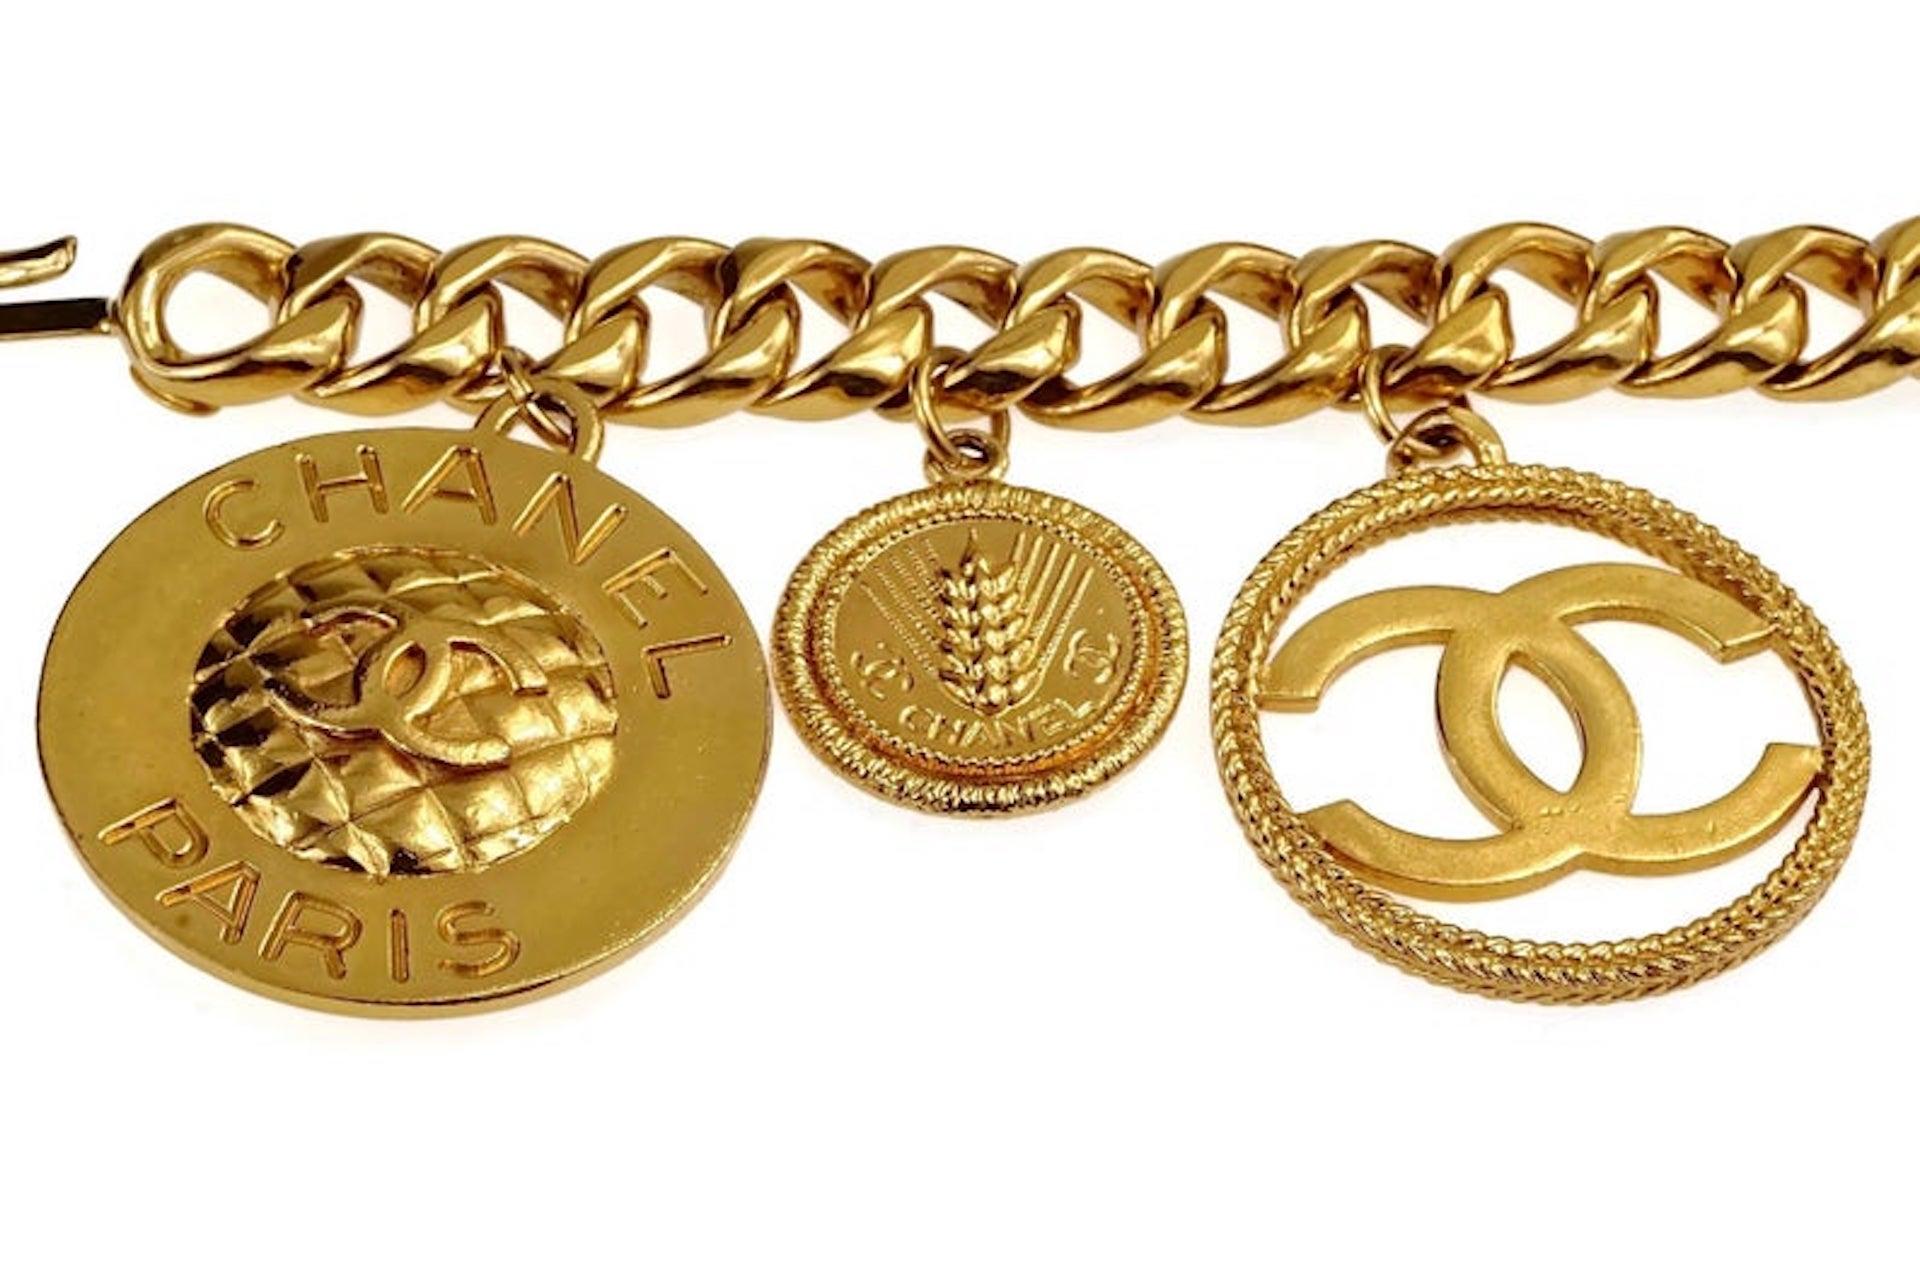 CHANEL Jumbo Iconic Logo Medallion Charm Necklace Belt 1